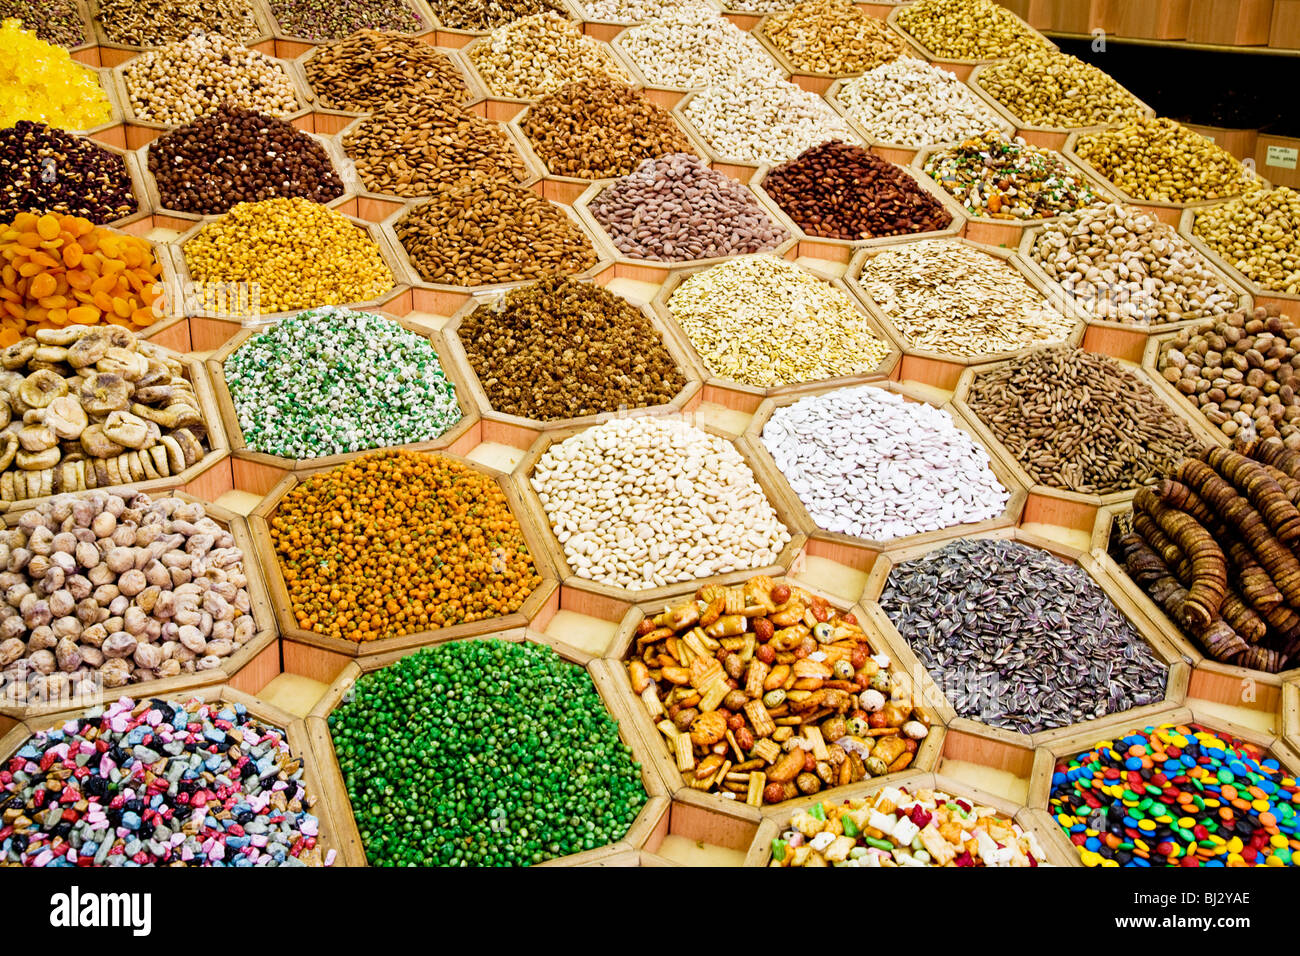 Les écrous d'arabie,graines et fruits secs sur l'affichage dans une boutique dans le souk aux épices de Deira, DUBAÏ, ÉMIRATS ARABES UNIS Banque D'Images